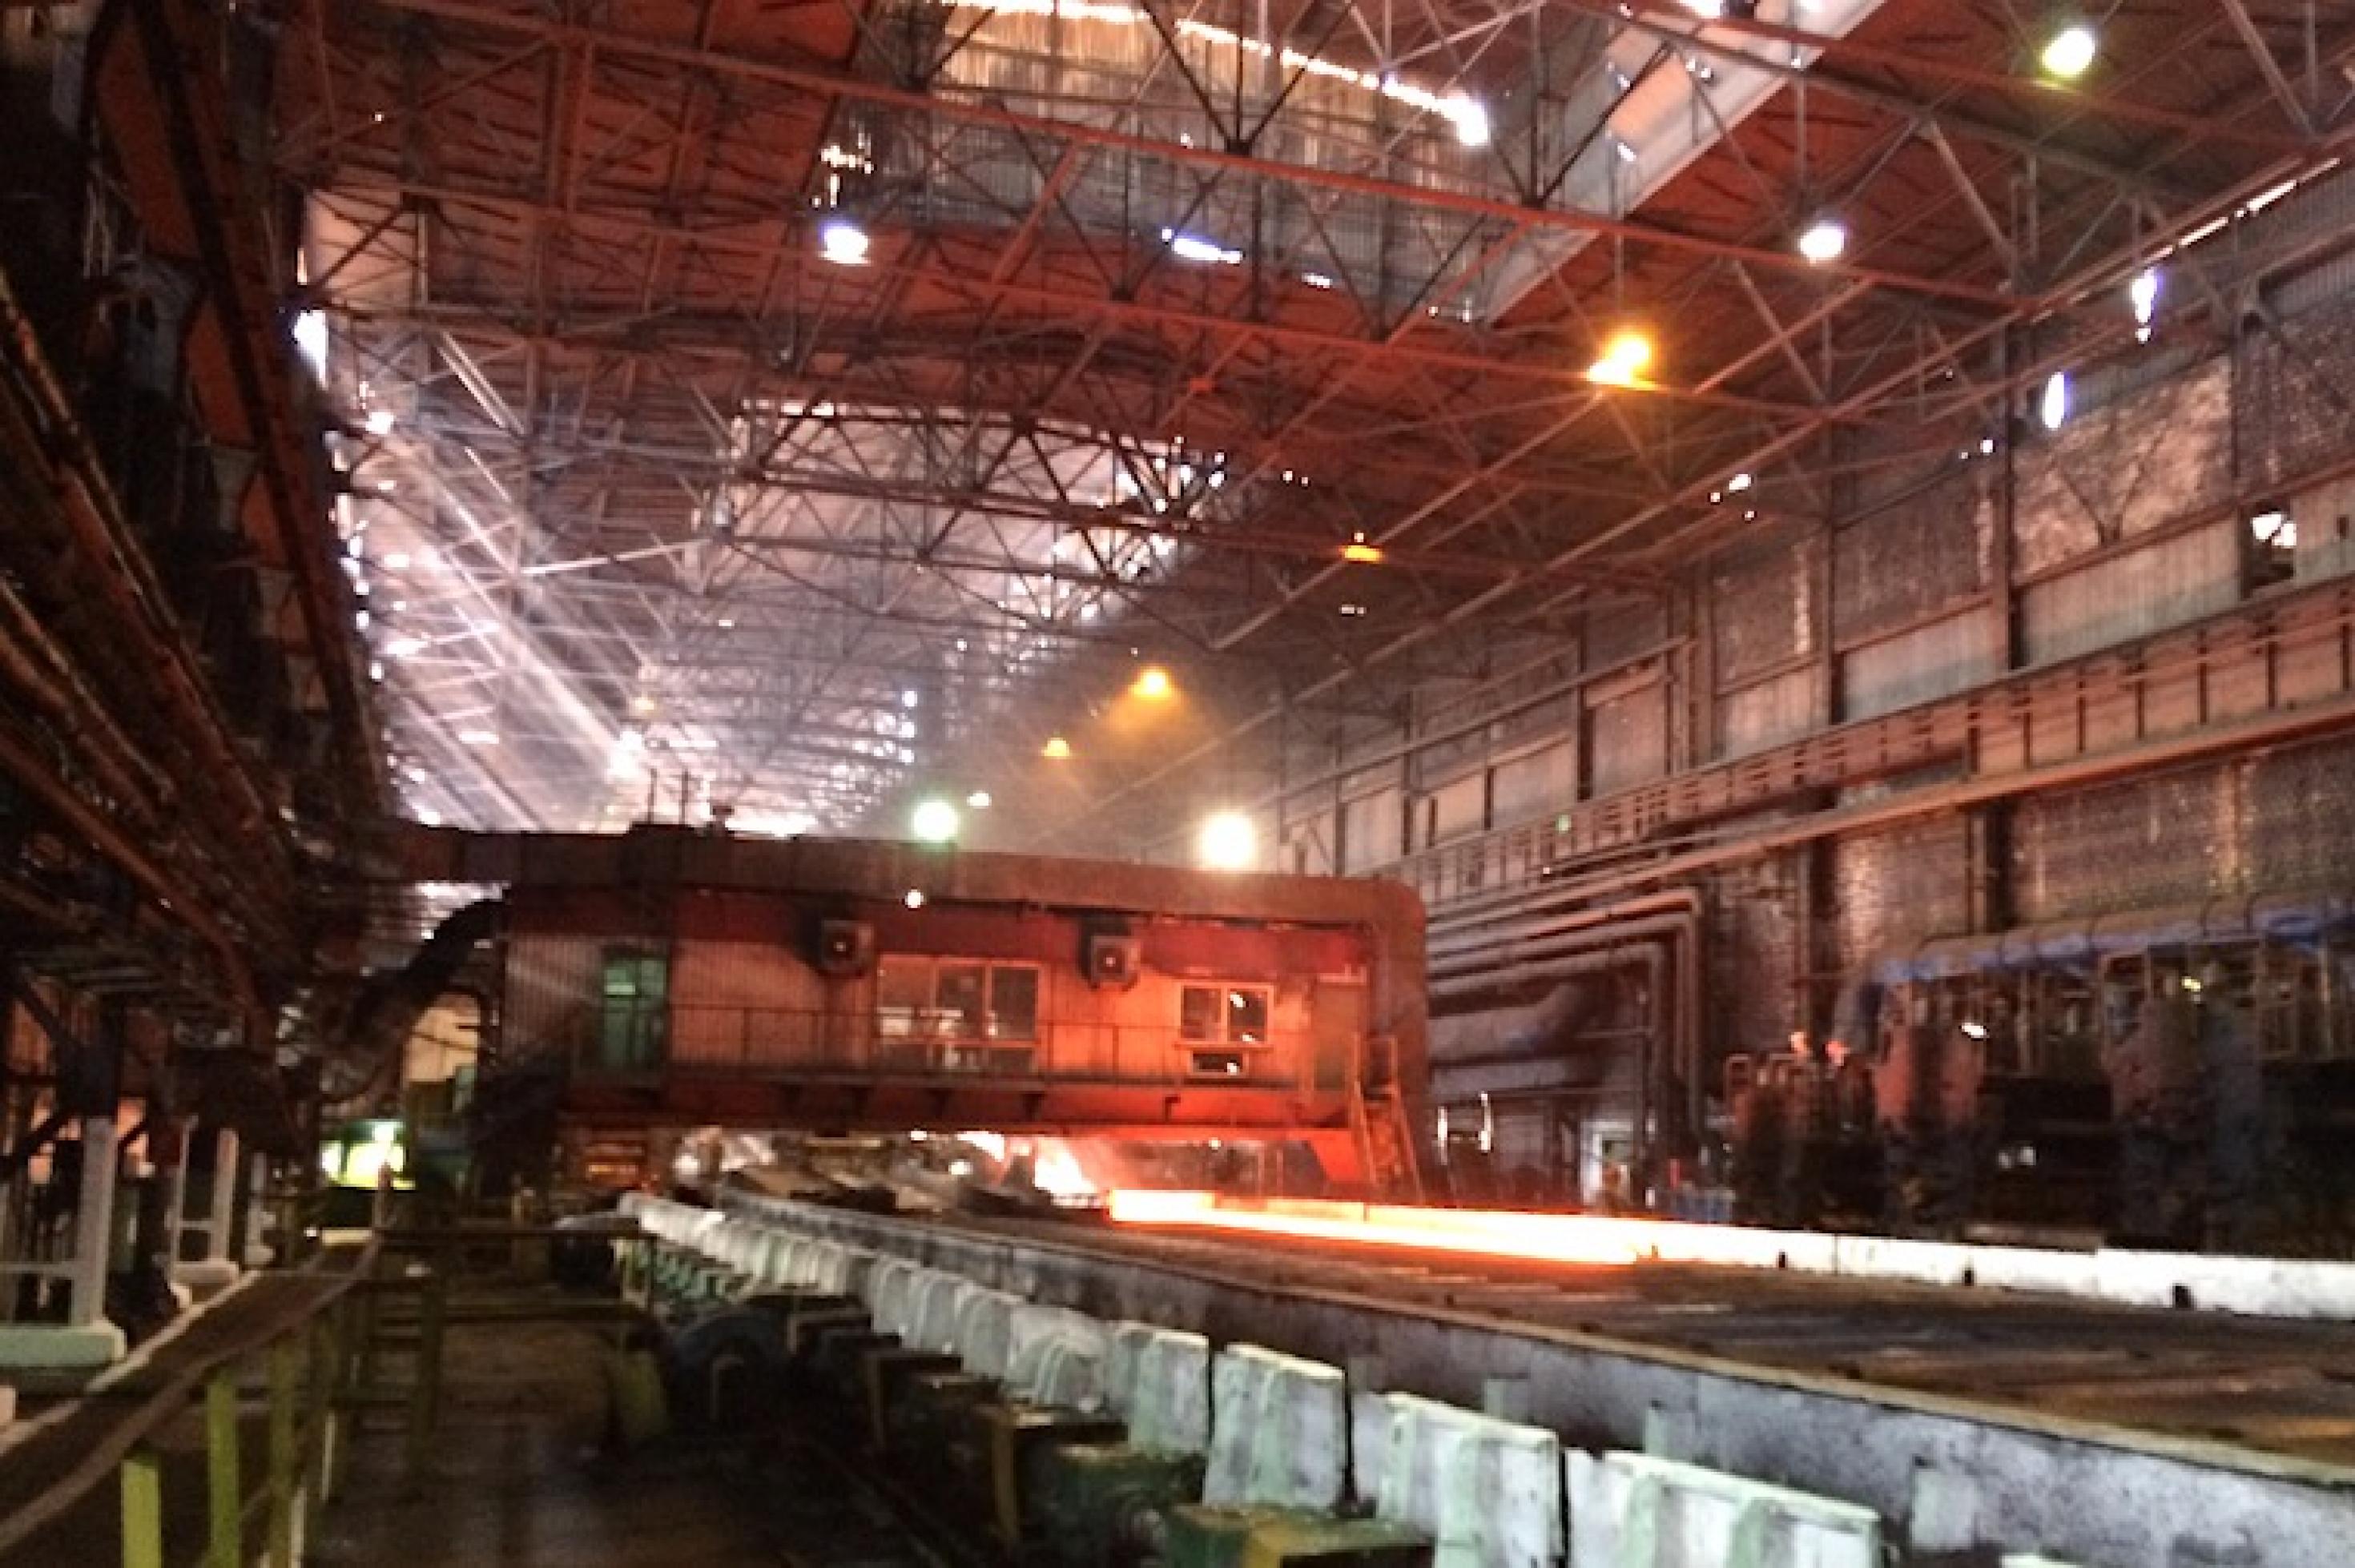 Blick in eine Produktionshalle von Asowstal, im Hintergrund wird glühender Stahl verarbeitet.